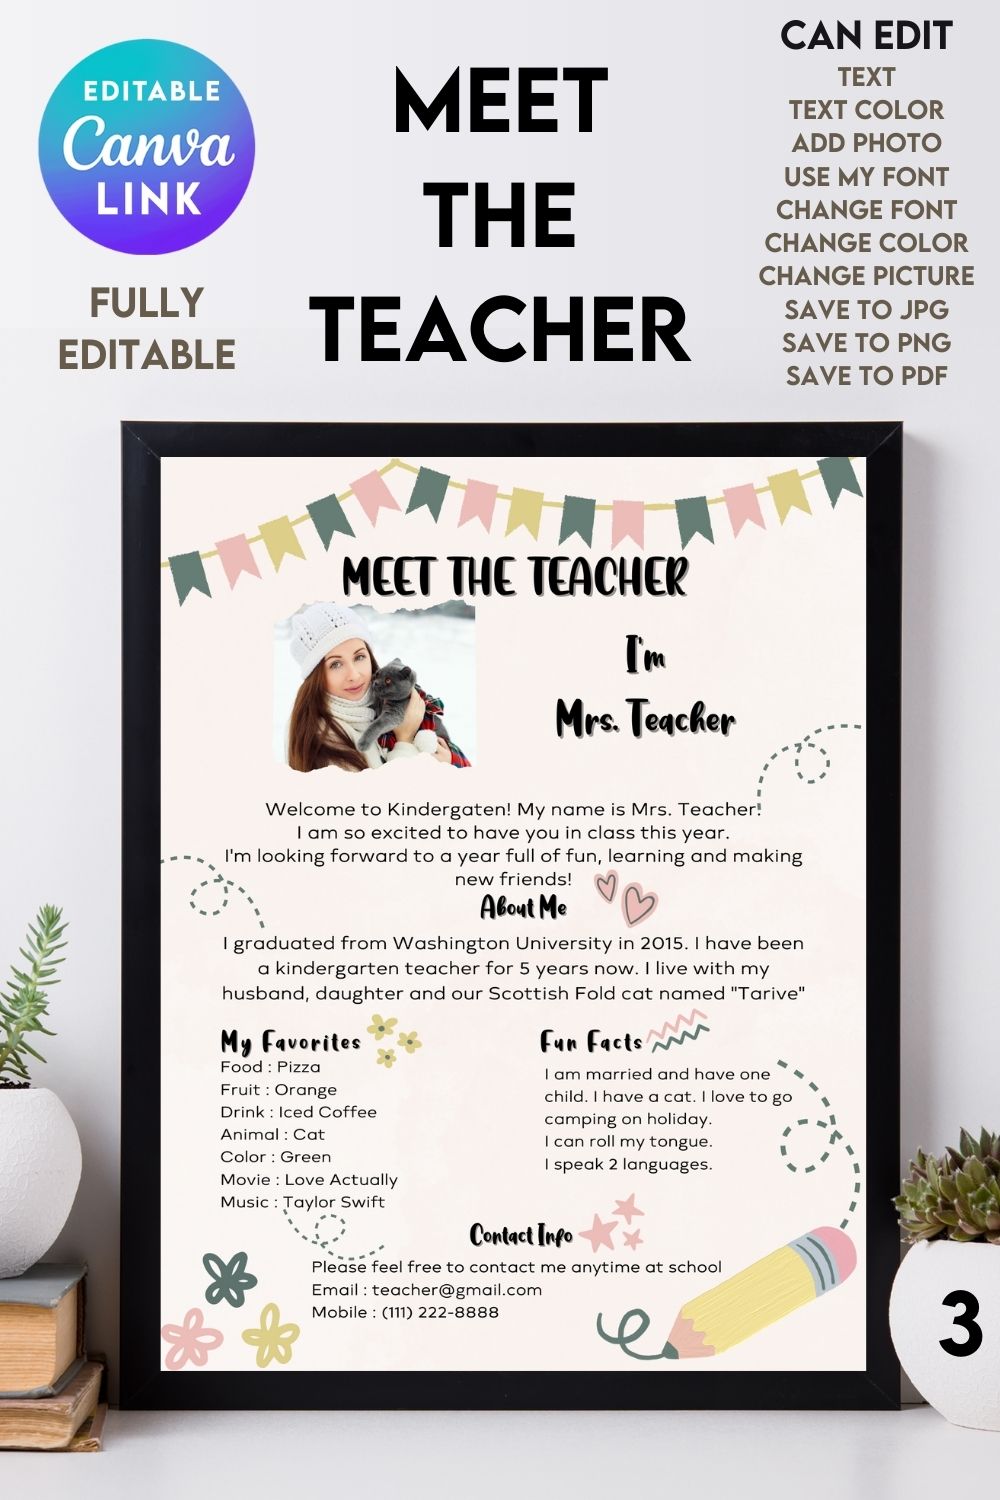 Meet The Teacher #3 – Canva Template pinterest preview image.